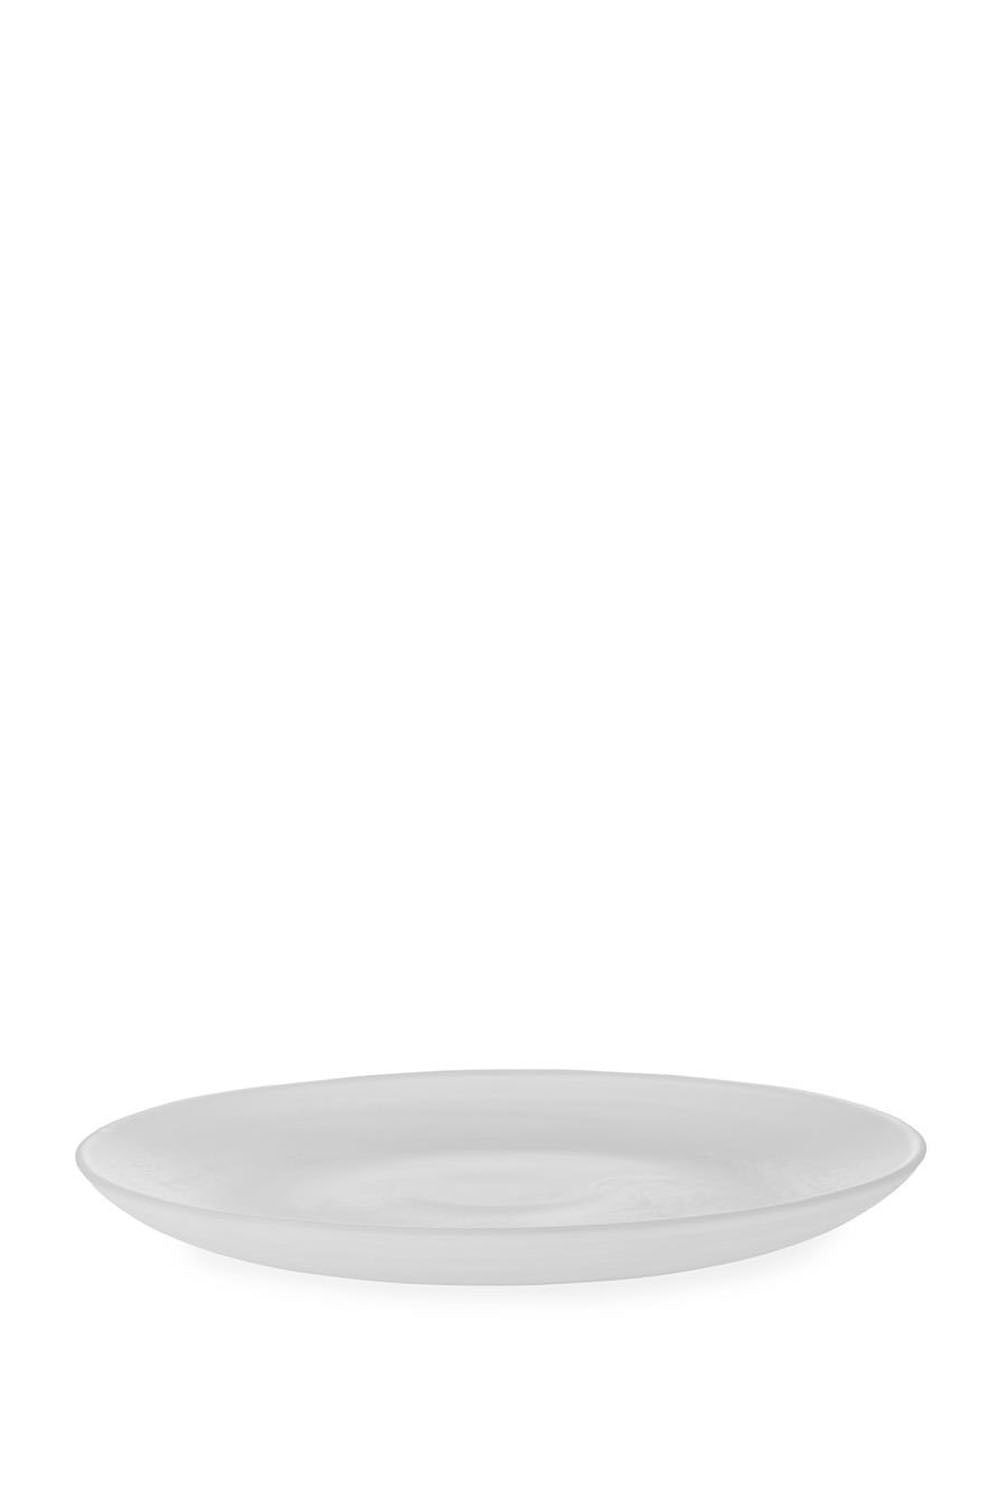 Cosmic Dinner Plate, 27cm